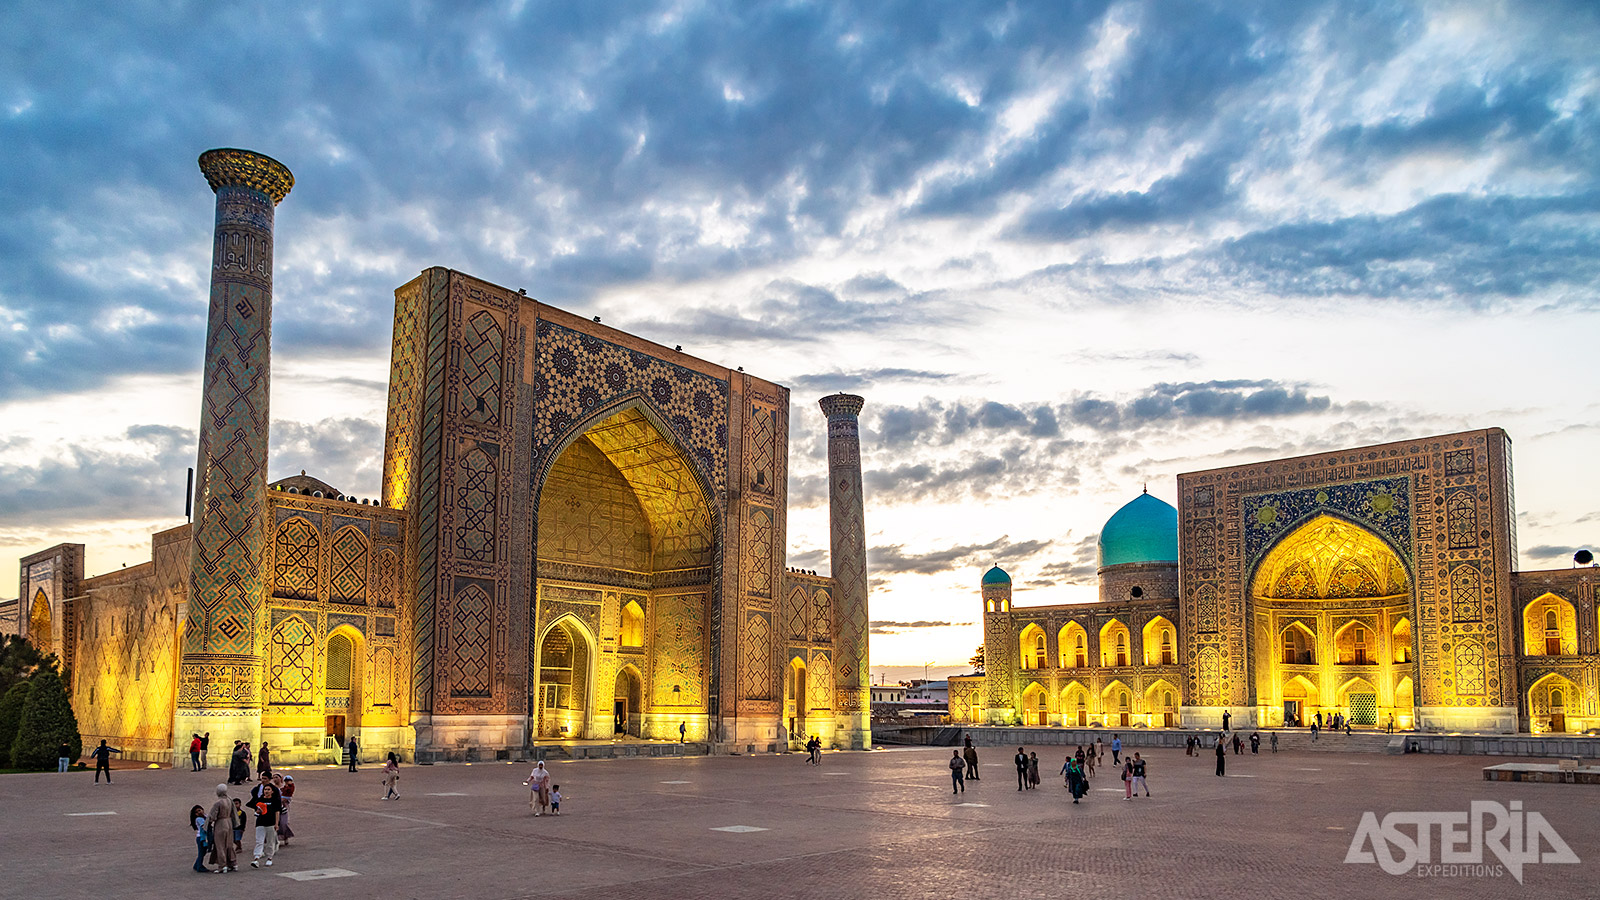 Het Registanplein in het historische hart van Samarkand wordt omringd door 3 madrassa’s